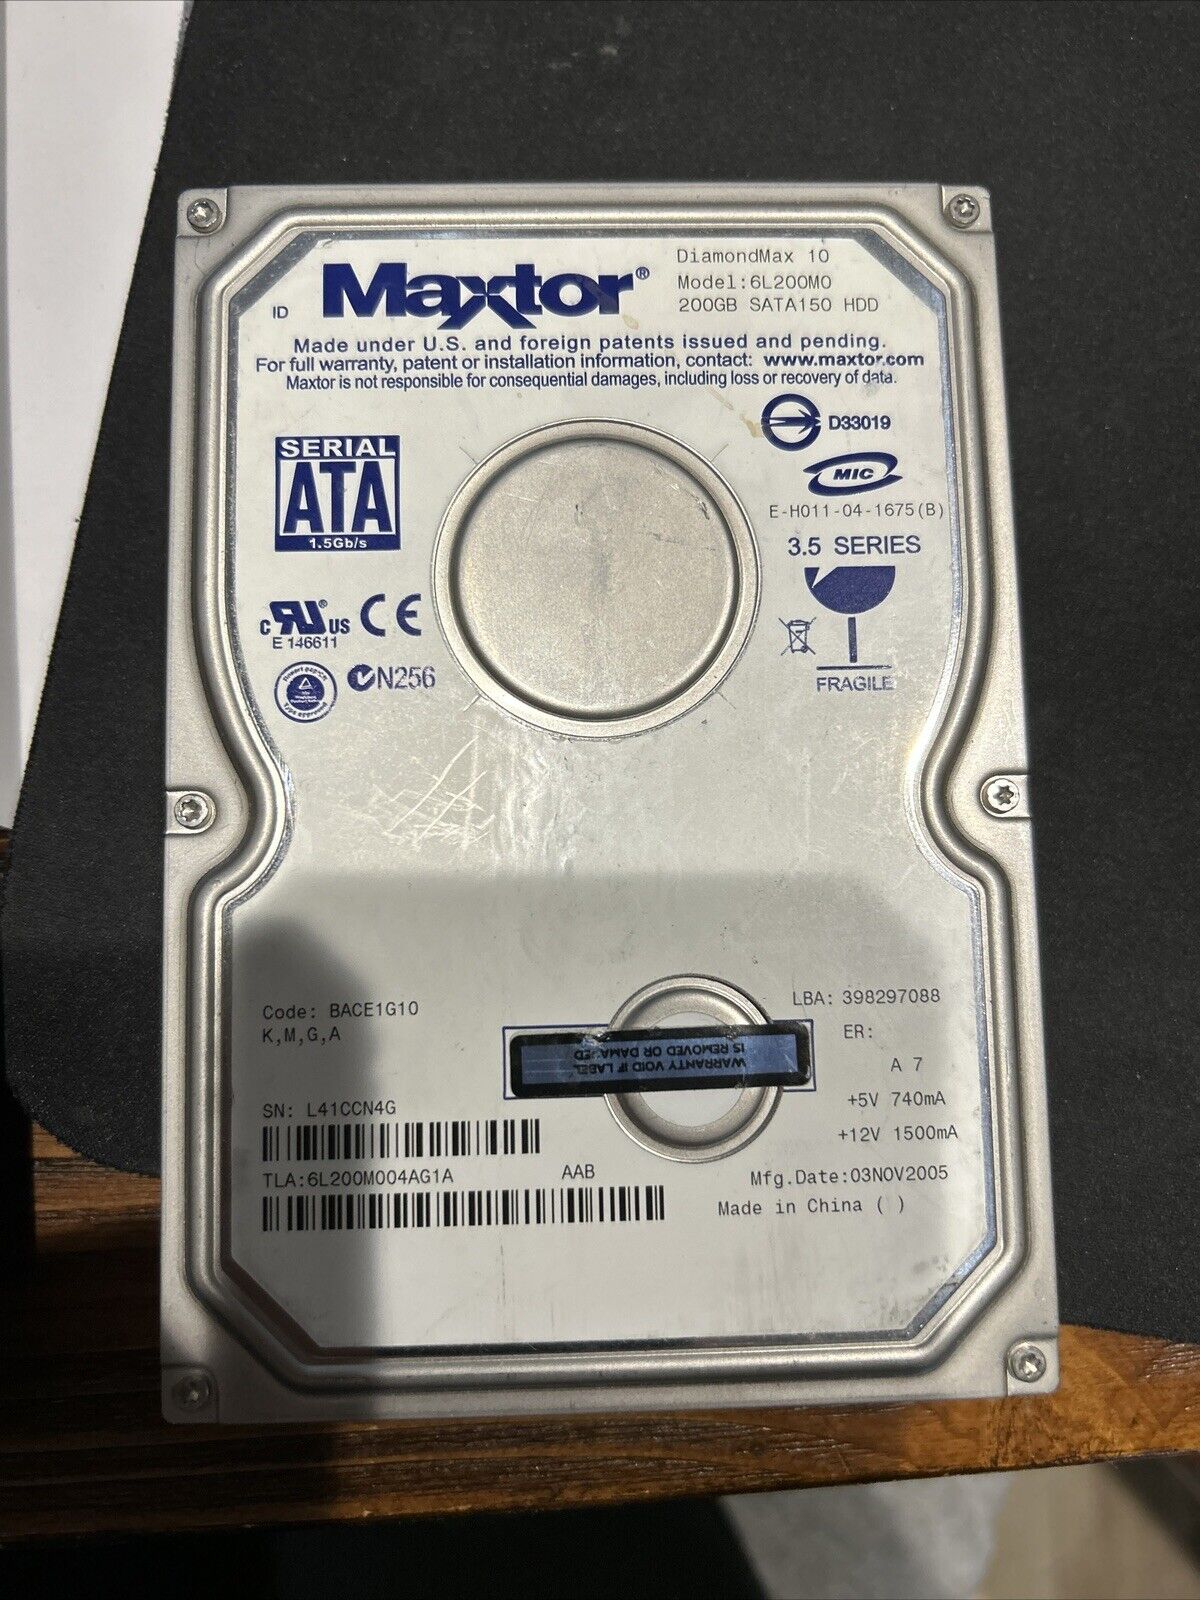 Maxtor 200GB DiamondMax 10 6L200M0 SATA150 3.5